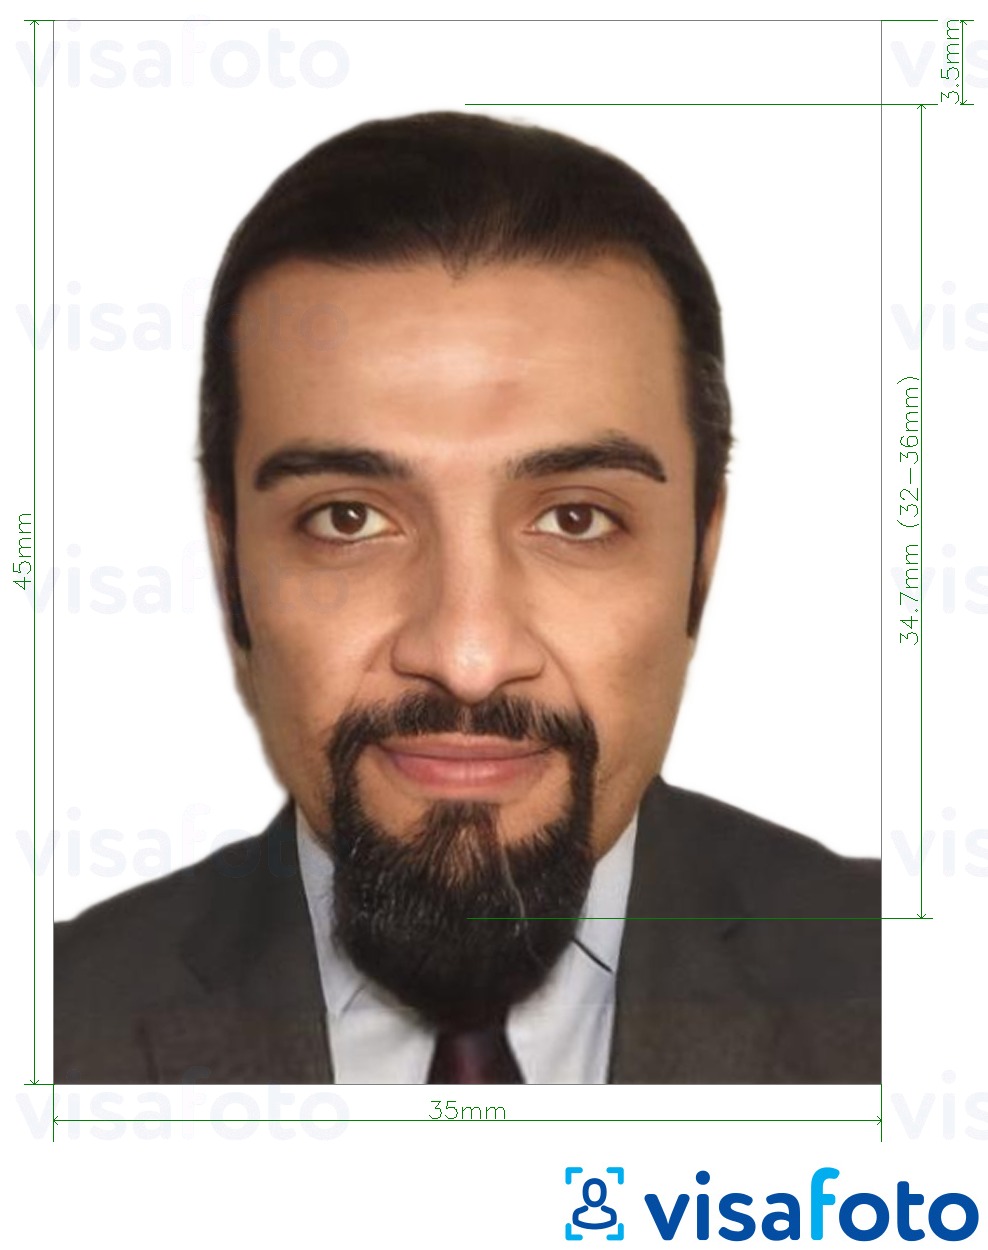 Exemplo de foto para Visa de Argélia 35x45 mm (3.5x4.5 cm) com especificação exata de dimensão